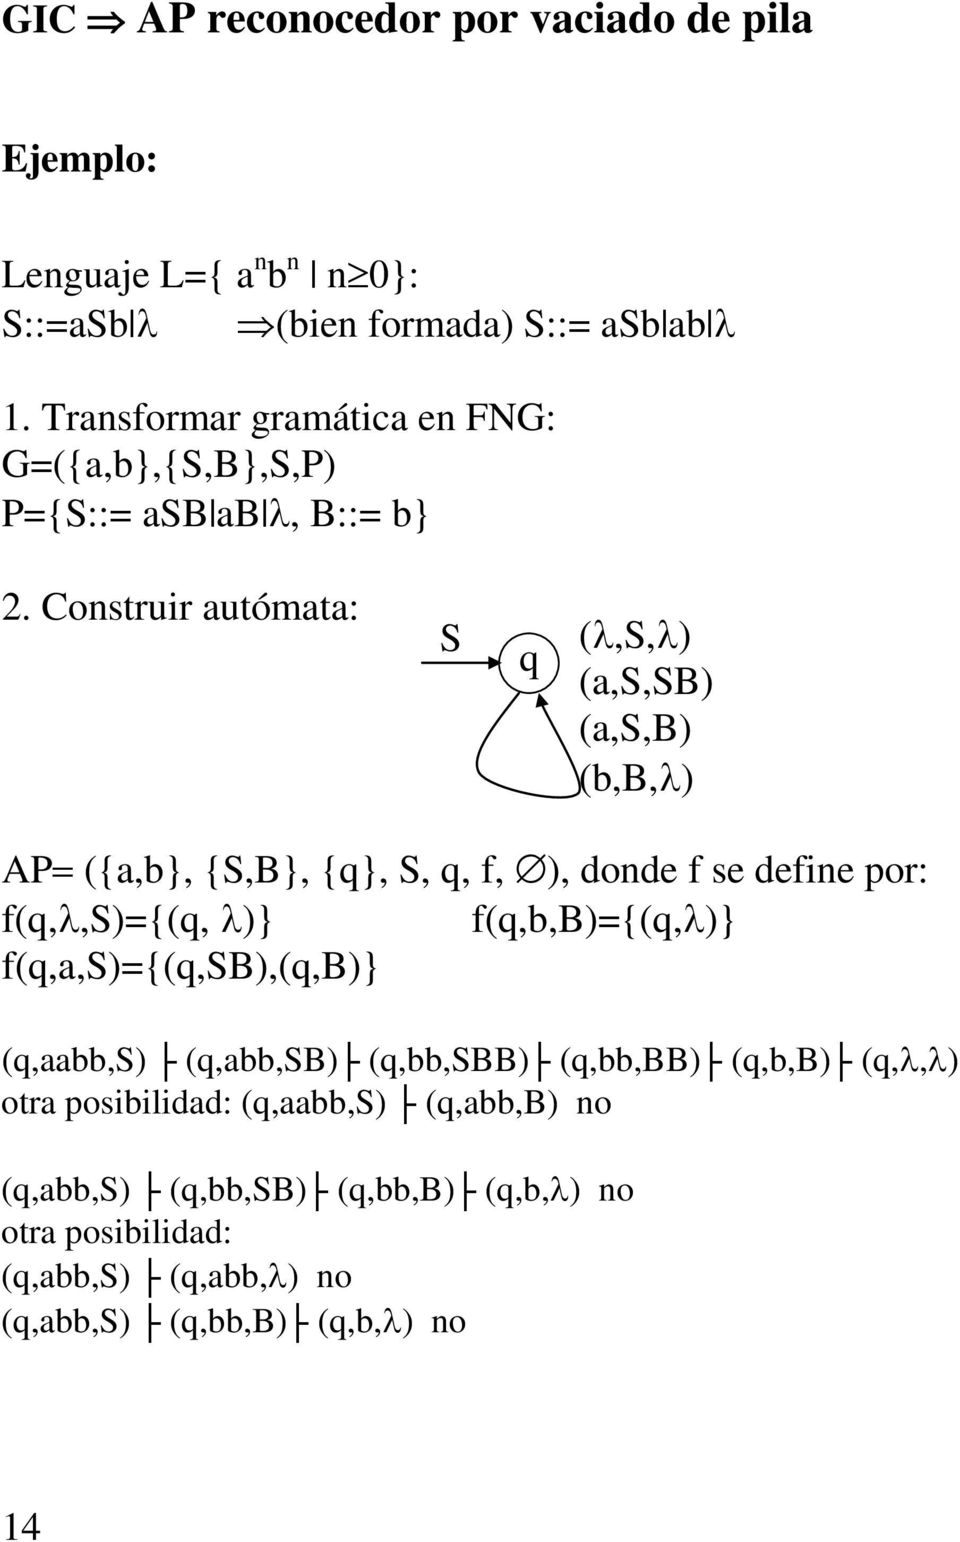 Construir autómata: S q (λ,s,λ) (a,s,sb) (a,s,b) (b,b,λ) AP= ({a,b}, {S,B}, {q}, S, q, f, ), donde f se define por: f(q,λ,s)={(q, λ)}